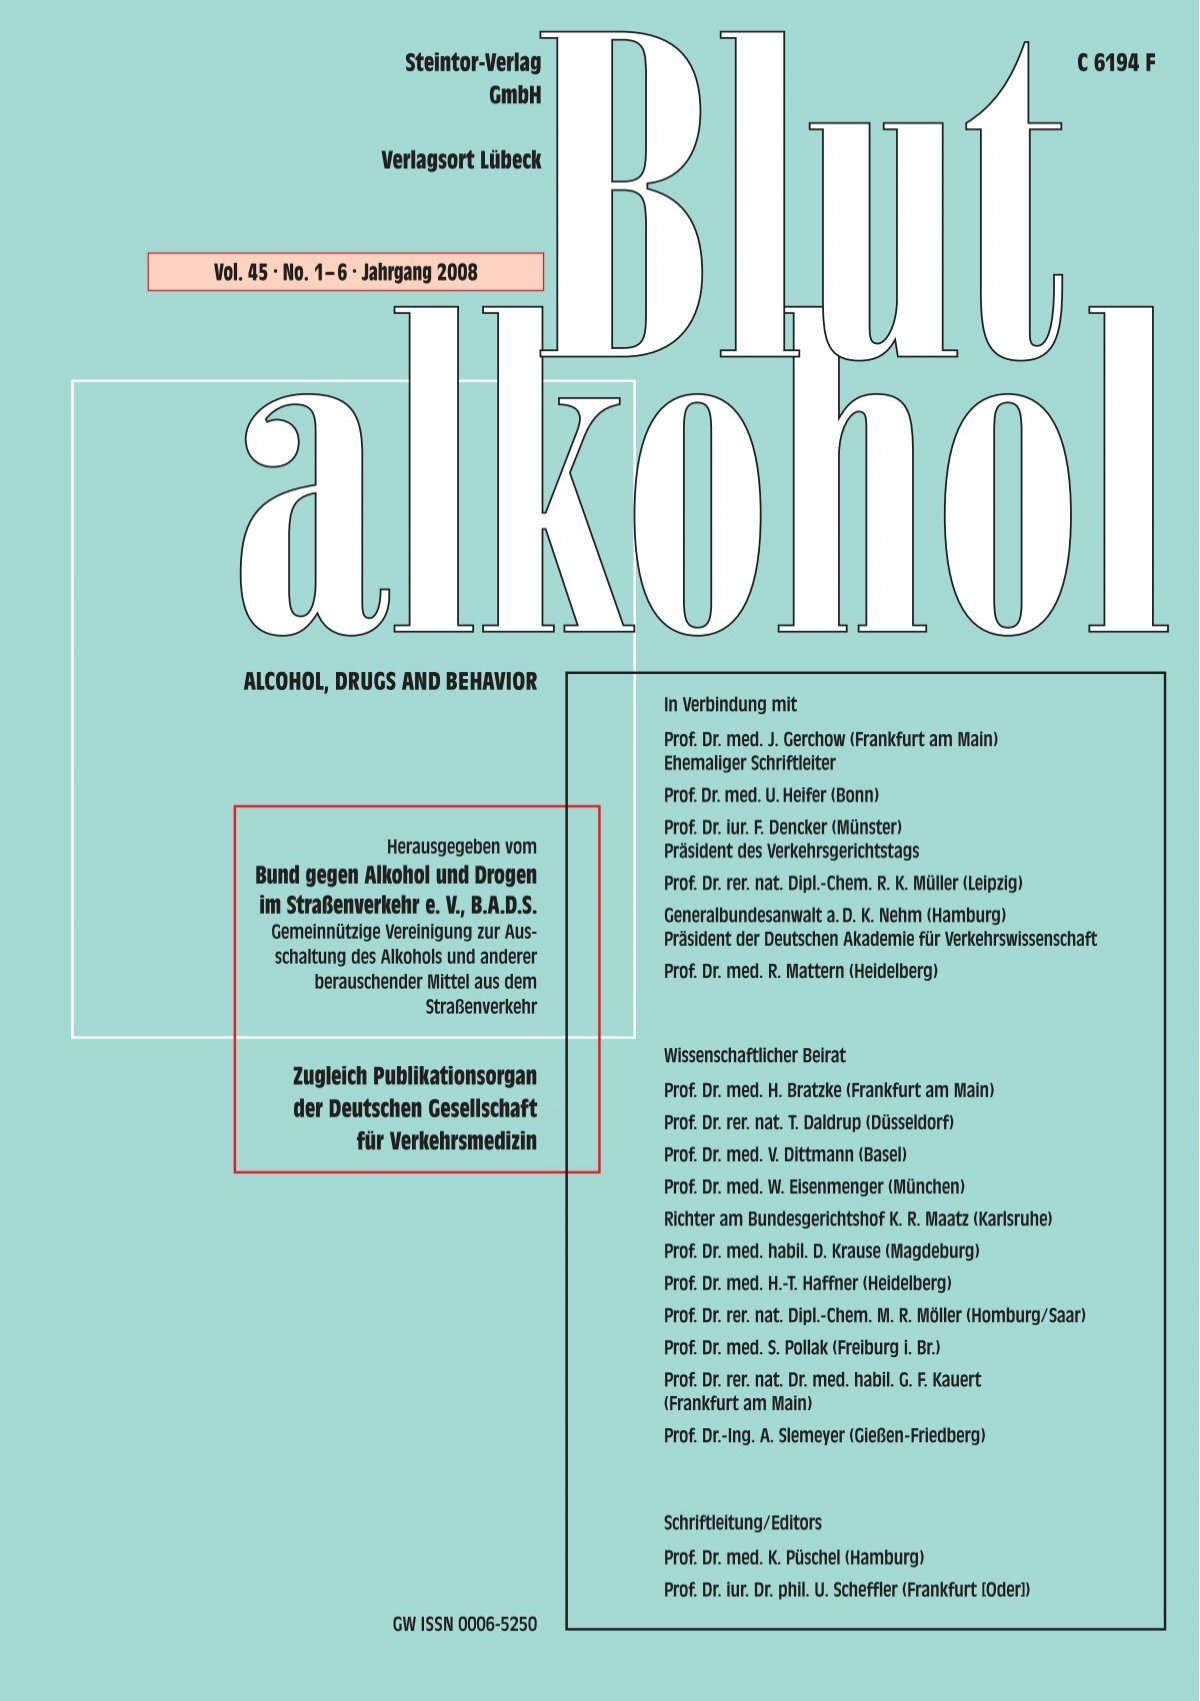 Blutalkohol - BADS (Bund gegen Alkohol und Drogen im